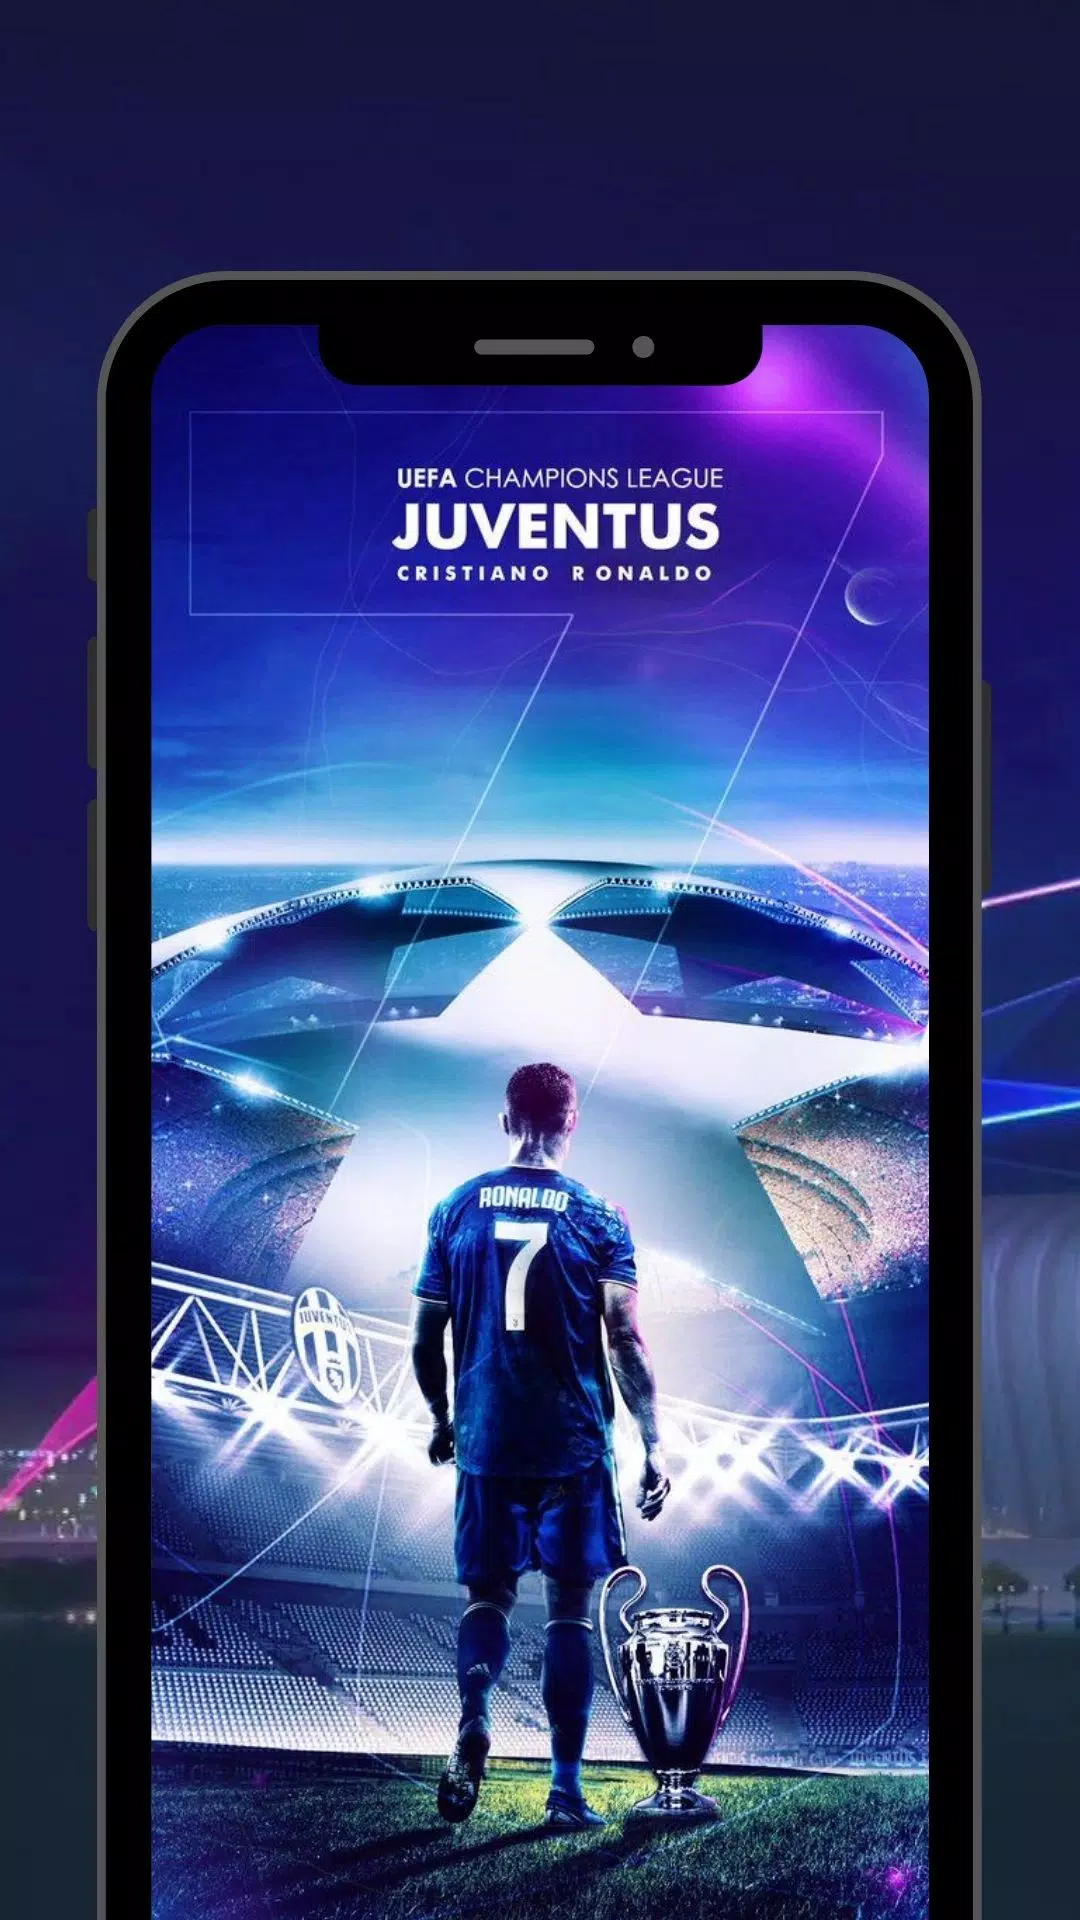 Để thể hiện sự yêu thích của mình với UEFA Champions League, không chỉ cần theo dõi giải đấu mà bạn còn có thể sử dụng APK Wallpaper Champion League 2021 cho Android. Hãy xem ngay hình ảnh liên quan và tải ngay phần mềm này để trang trí cho chiếc điện thoại của bạn thêm phần sống động nhé!